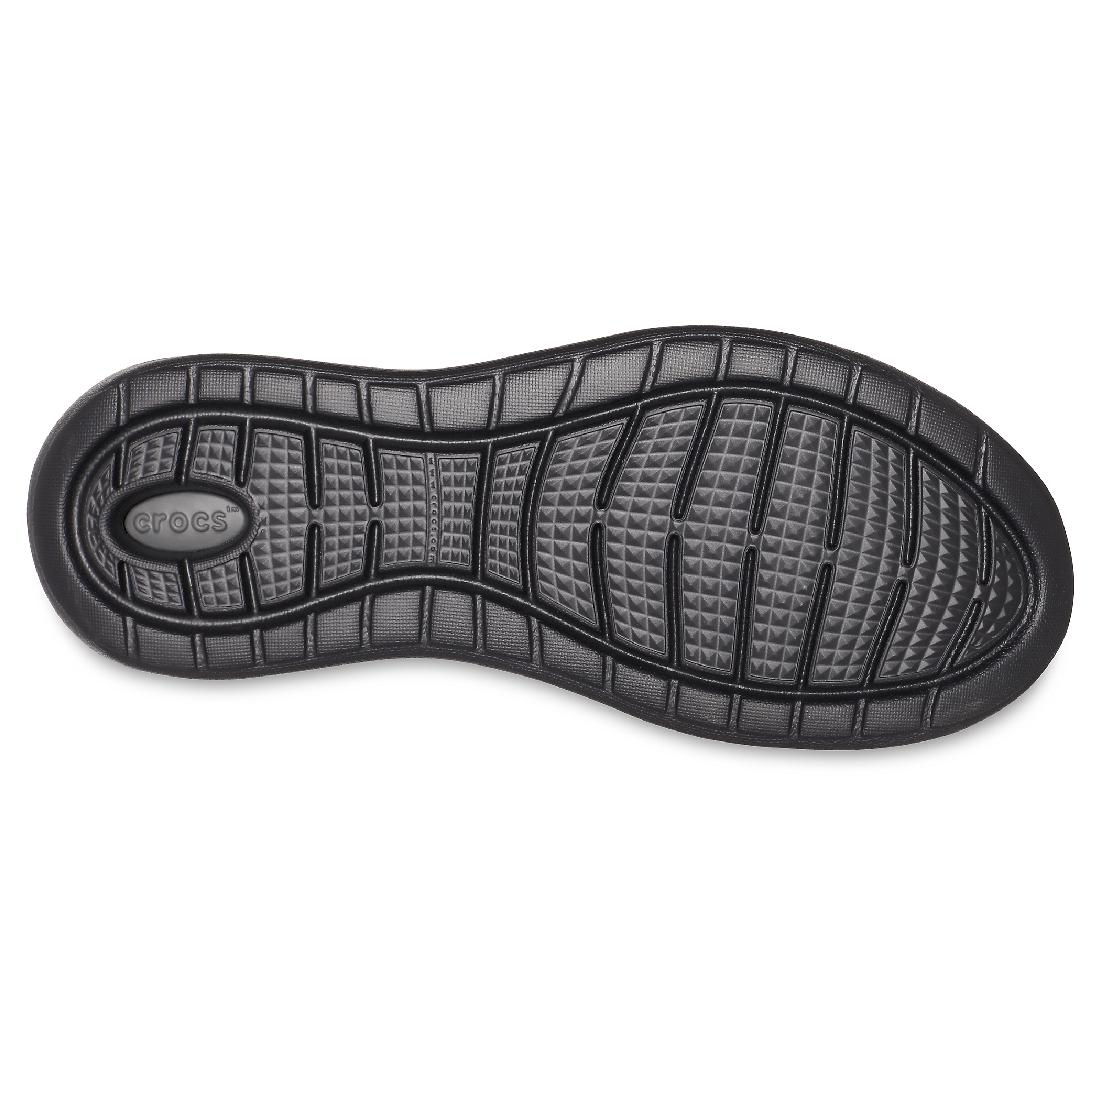 Crocs LiteRide Pacer M Clog Herren Erwachsene Sneaker Relaxed Fit 204967 Schwarz